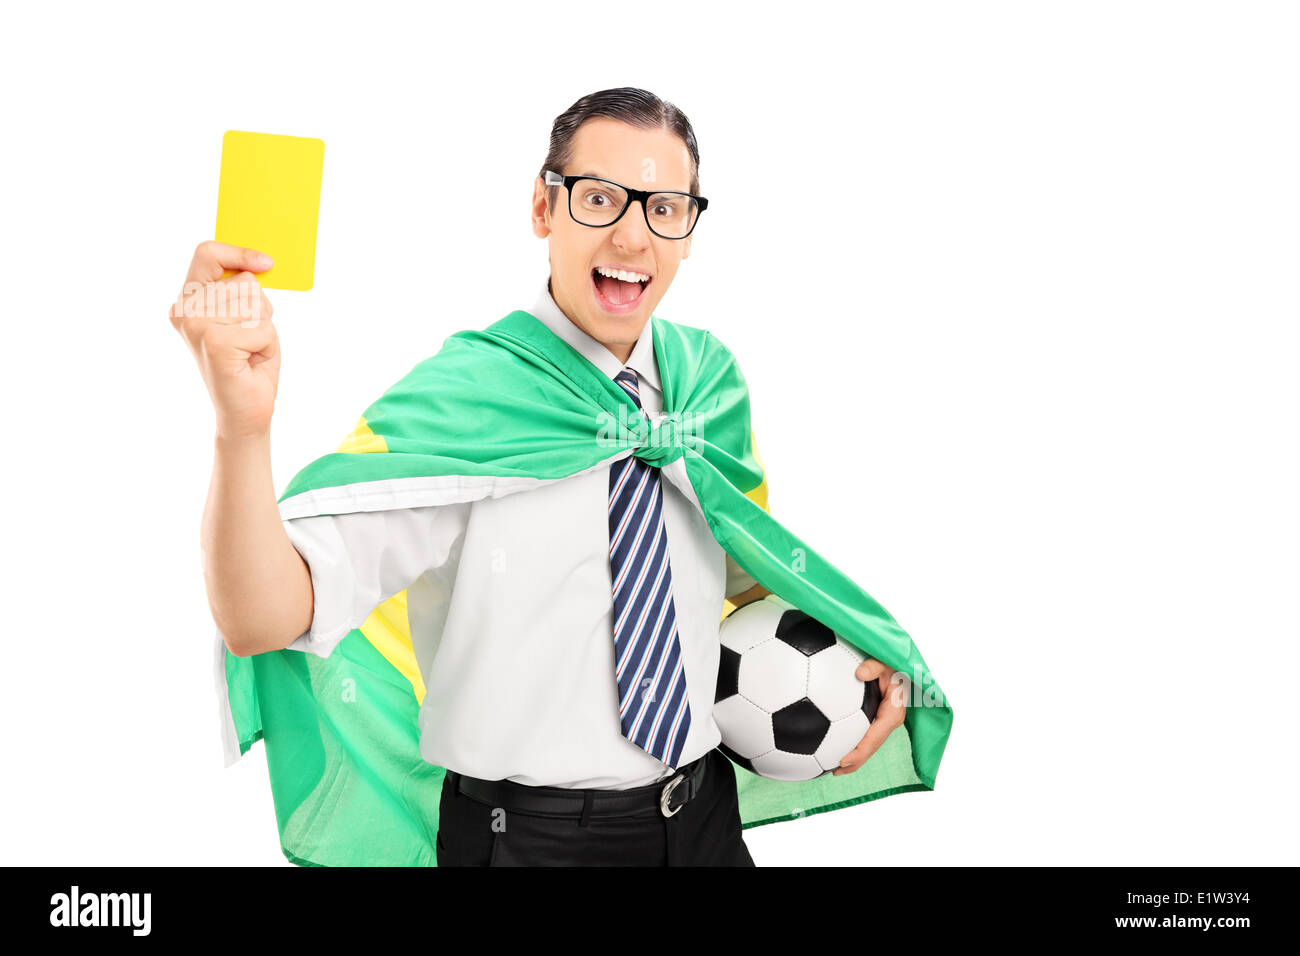 Fan de foot avec drapeau brésilien holding carte jaune Banque D'Images